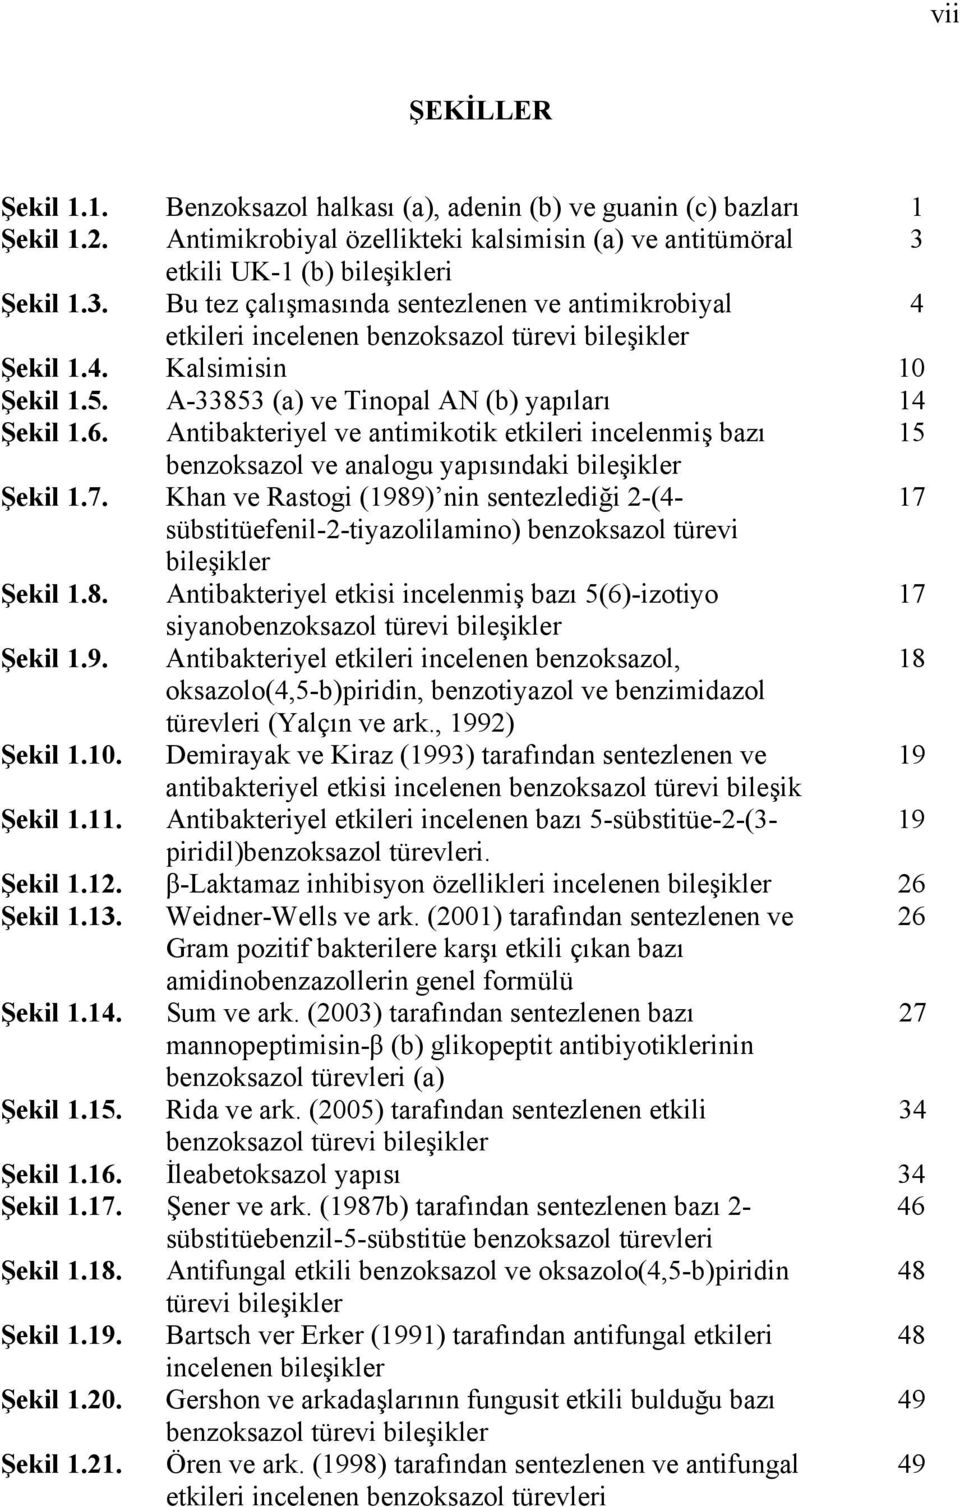 A-33853 (a) ve Tinopal AN (b) yapıları 14 Şekil 1.6. Antibakteriyel ve antimikotik etkileri incelenmiş bazı 15 benzoksazol ve analogu yapısındaki bileşikler Şekil 1.7.